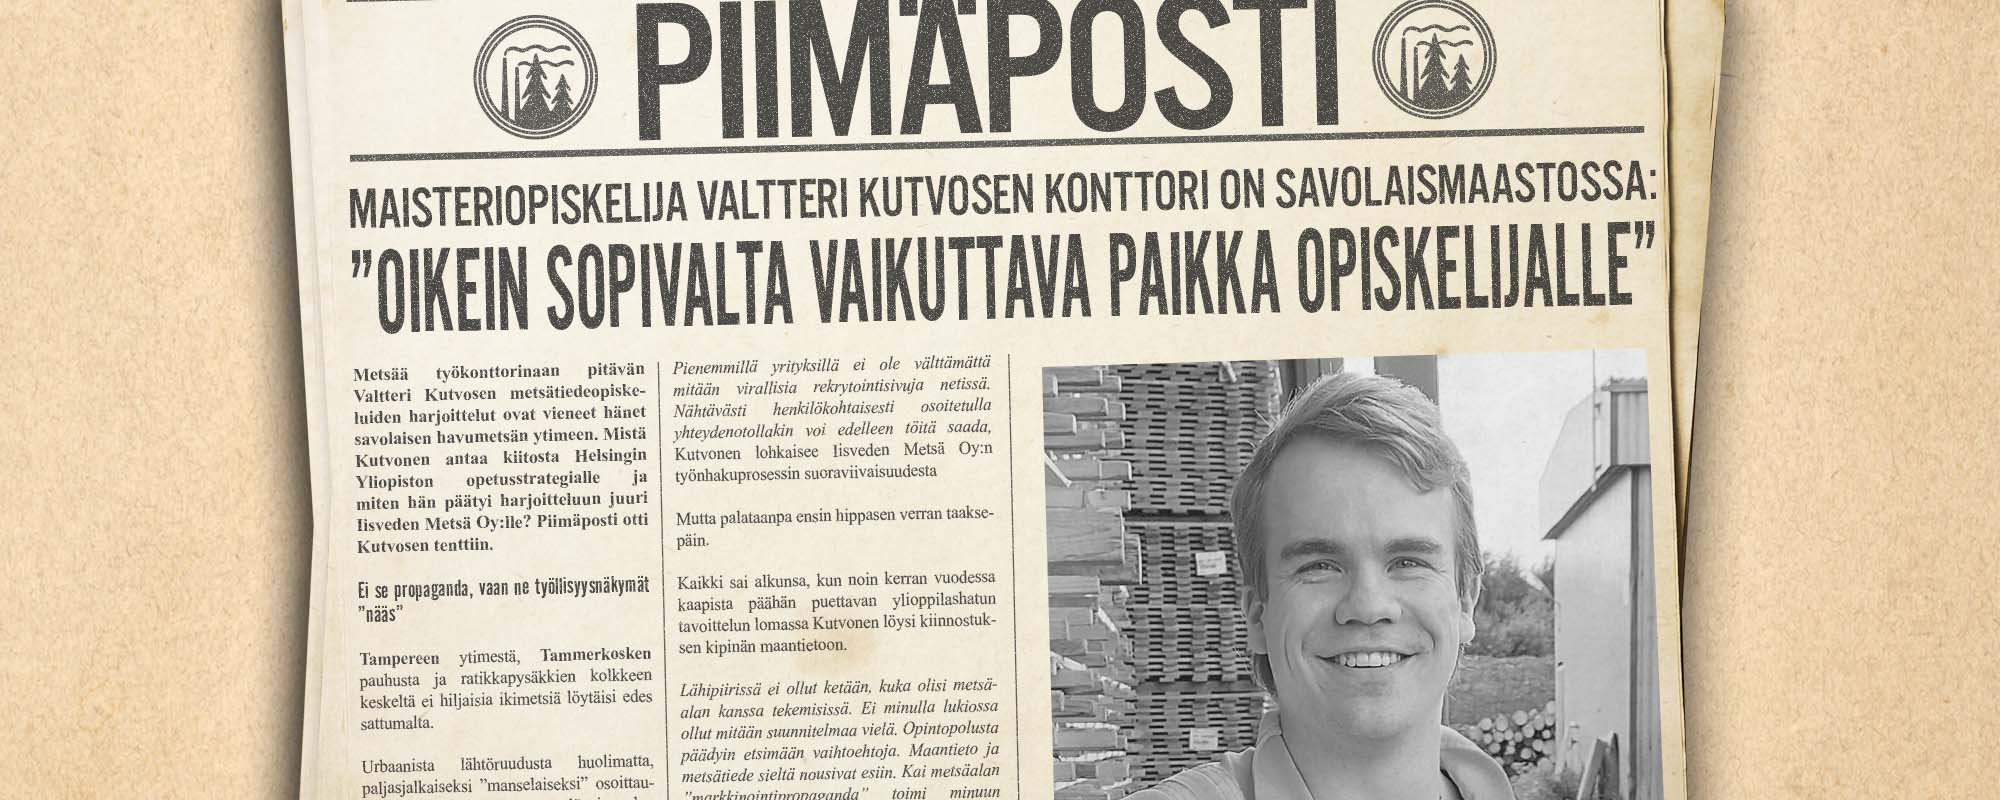 Maisteriopiskelija Valtteri Kutvosen konttori on savolaismaastossa: ”Oikein sopivalta vaikuttava paikka opiskelijalle”